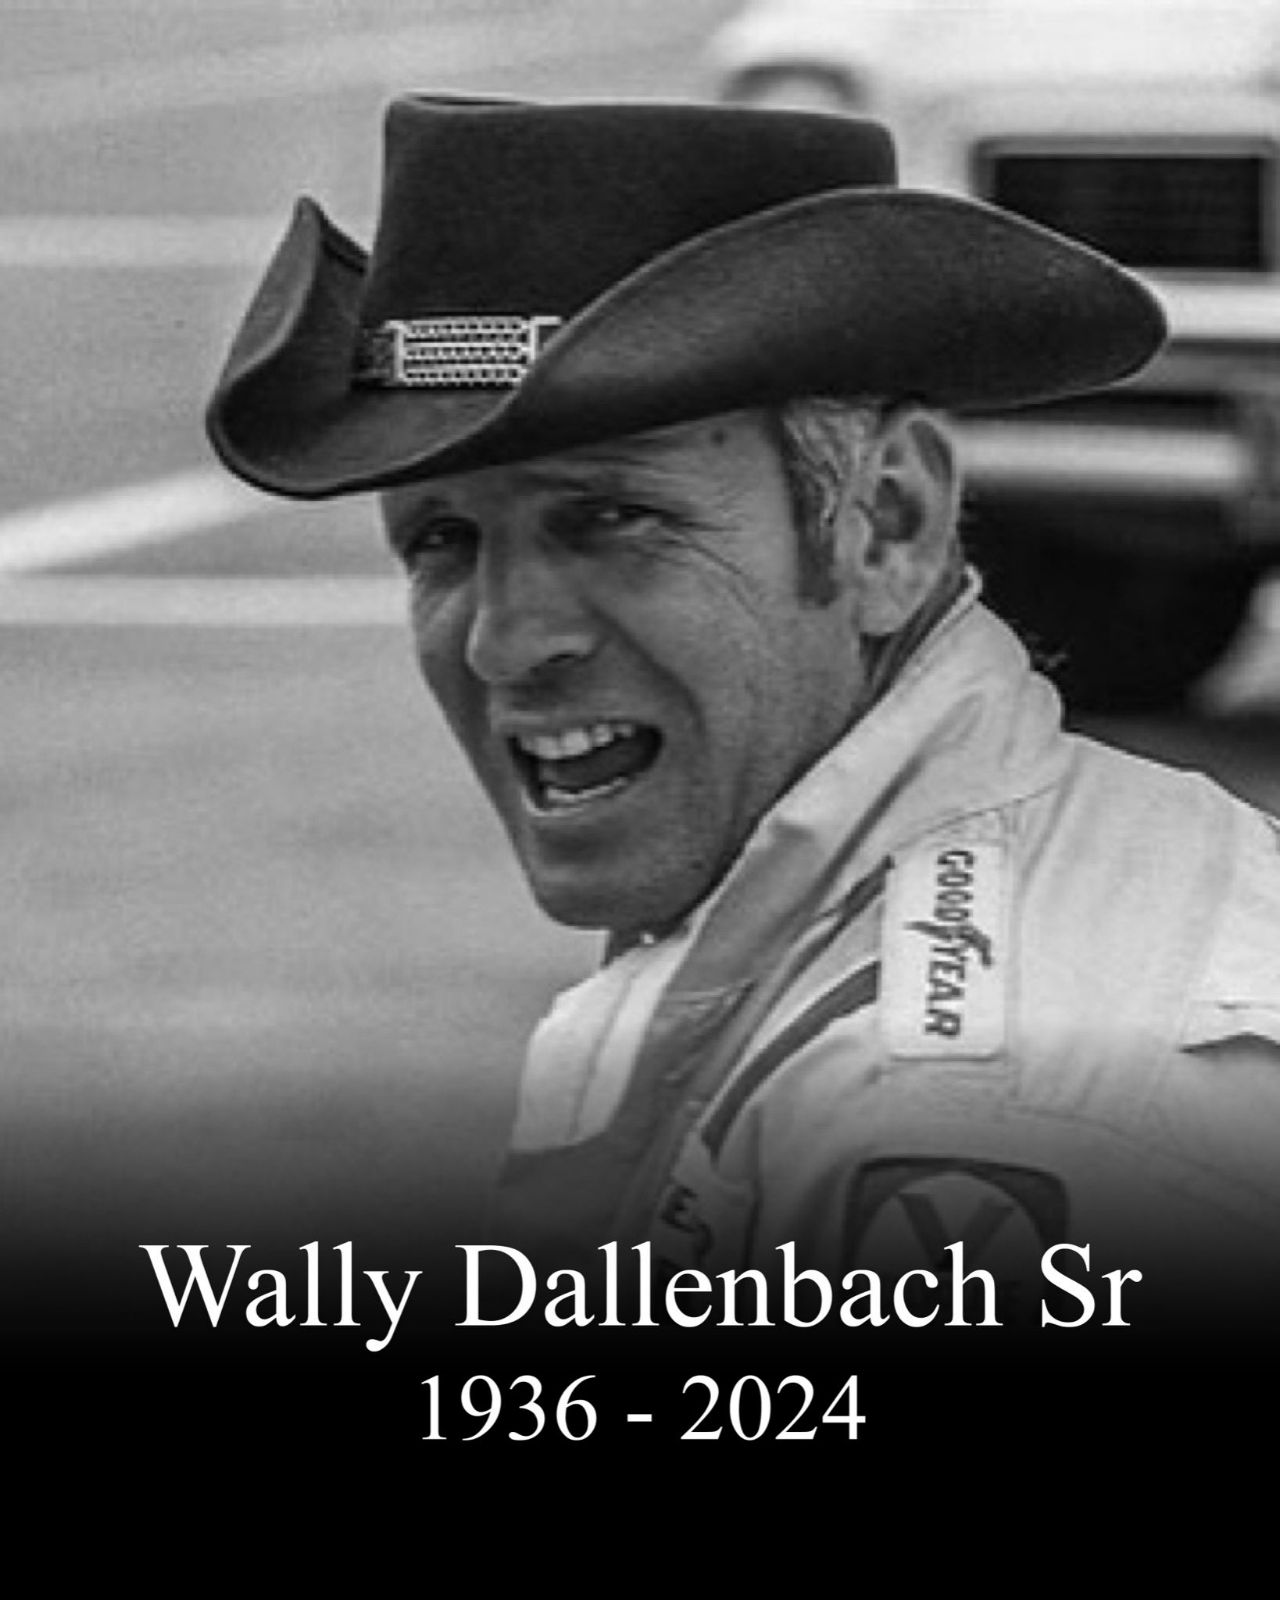 Wally Dallenbach Dies 1936 - 2024